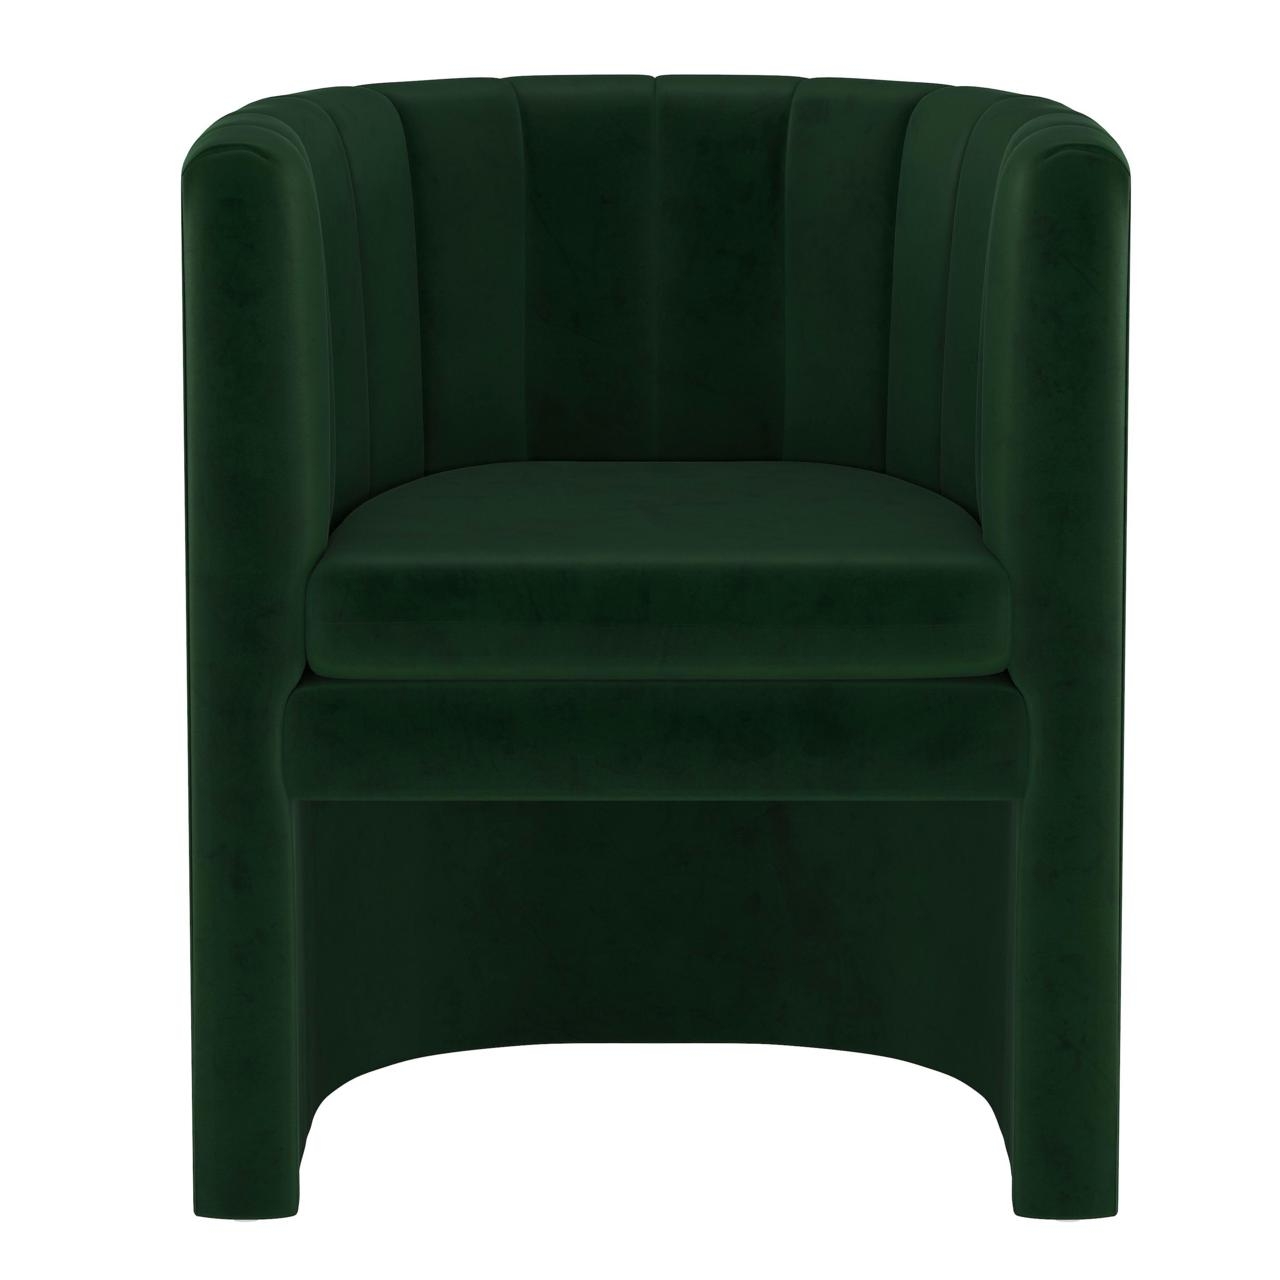 Wellshire Chair, Emerald Velvet - Image 1